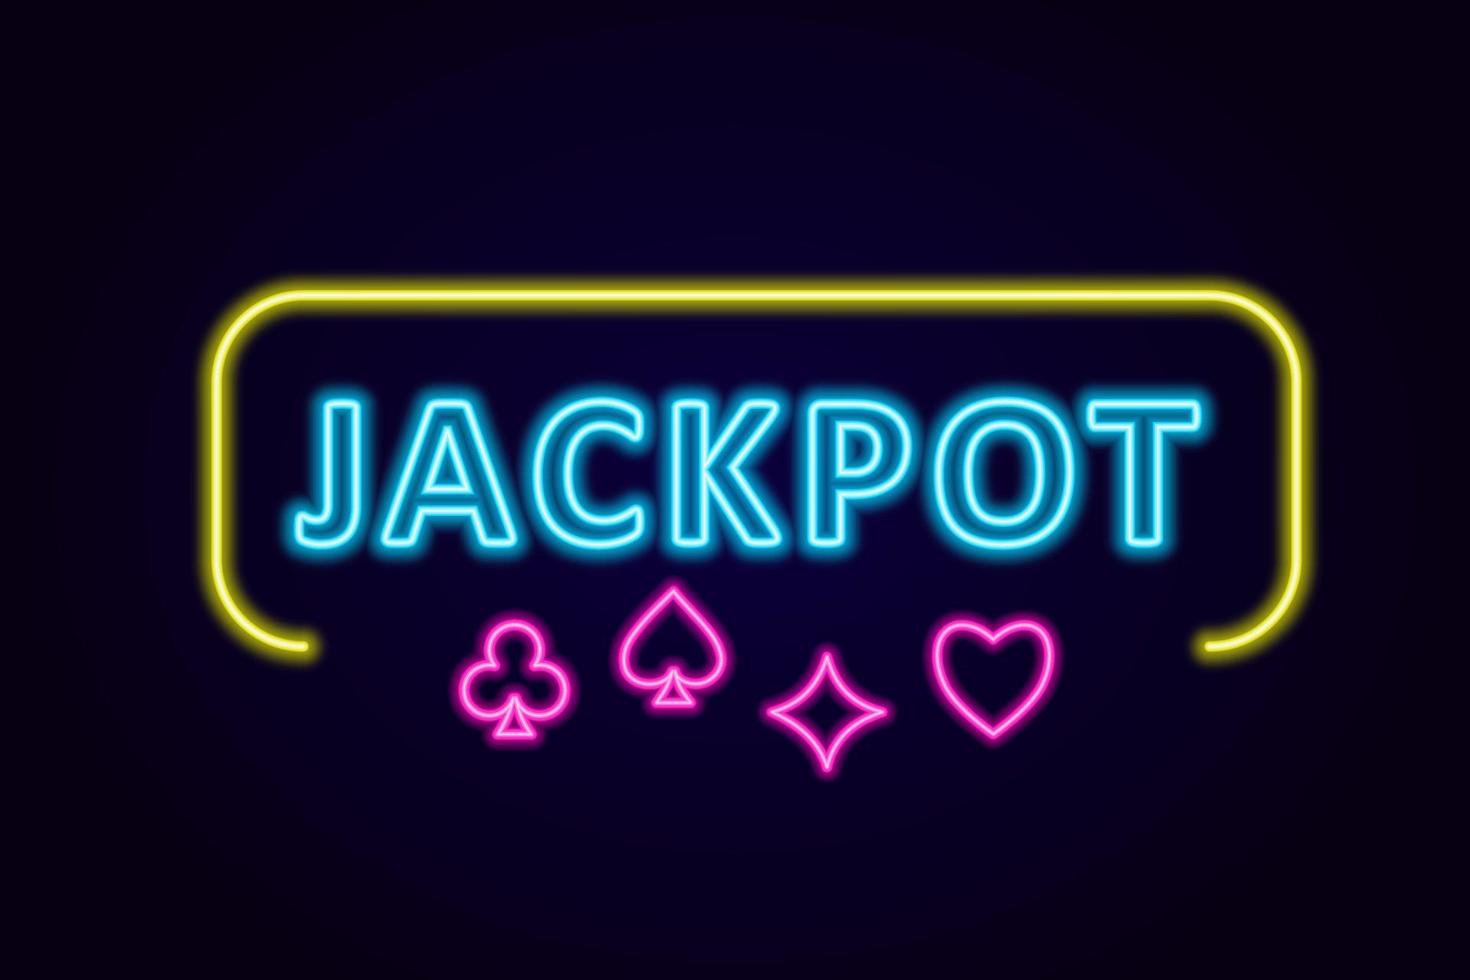 kasino logotyp i neon stil. neon tecken, anslagstavla, ljus ljus reklam spelande, kasino, poker. vektor illustration